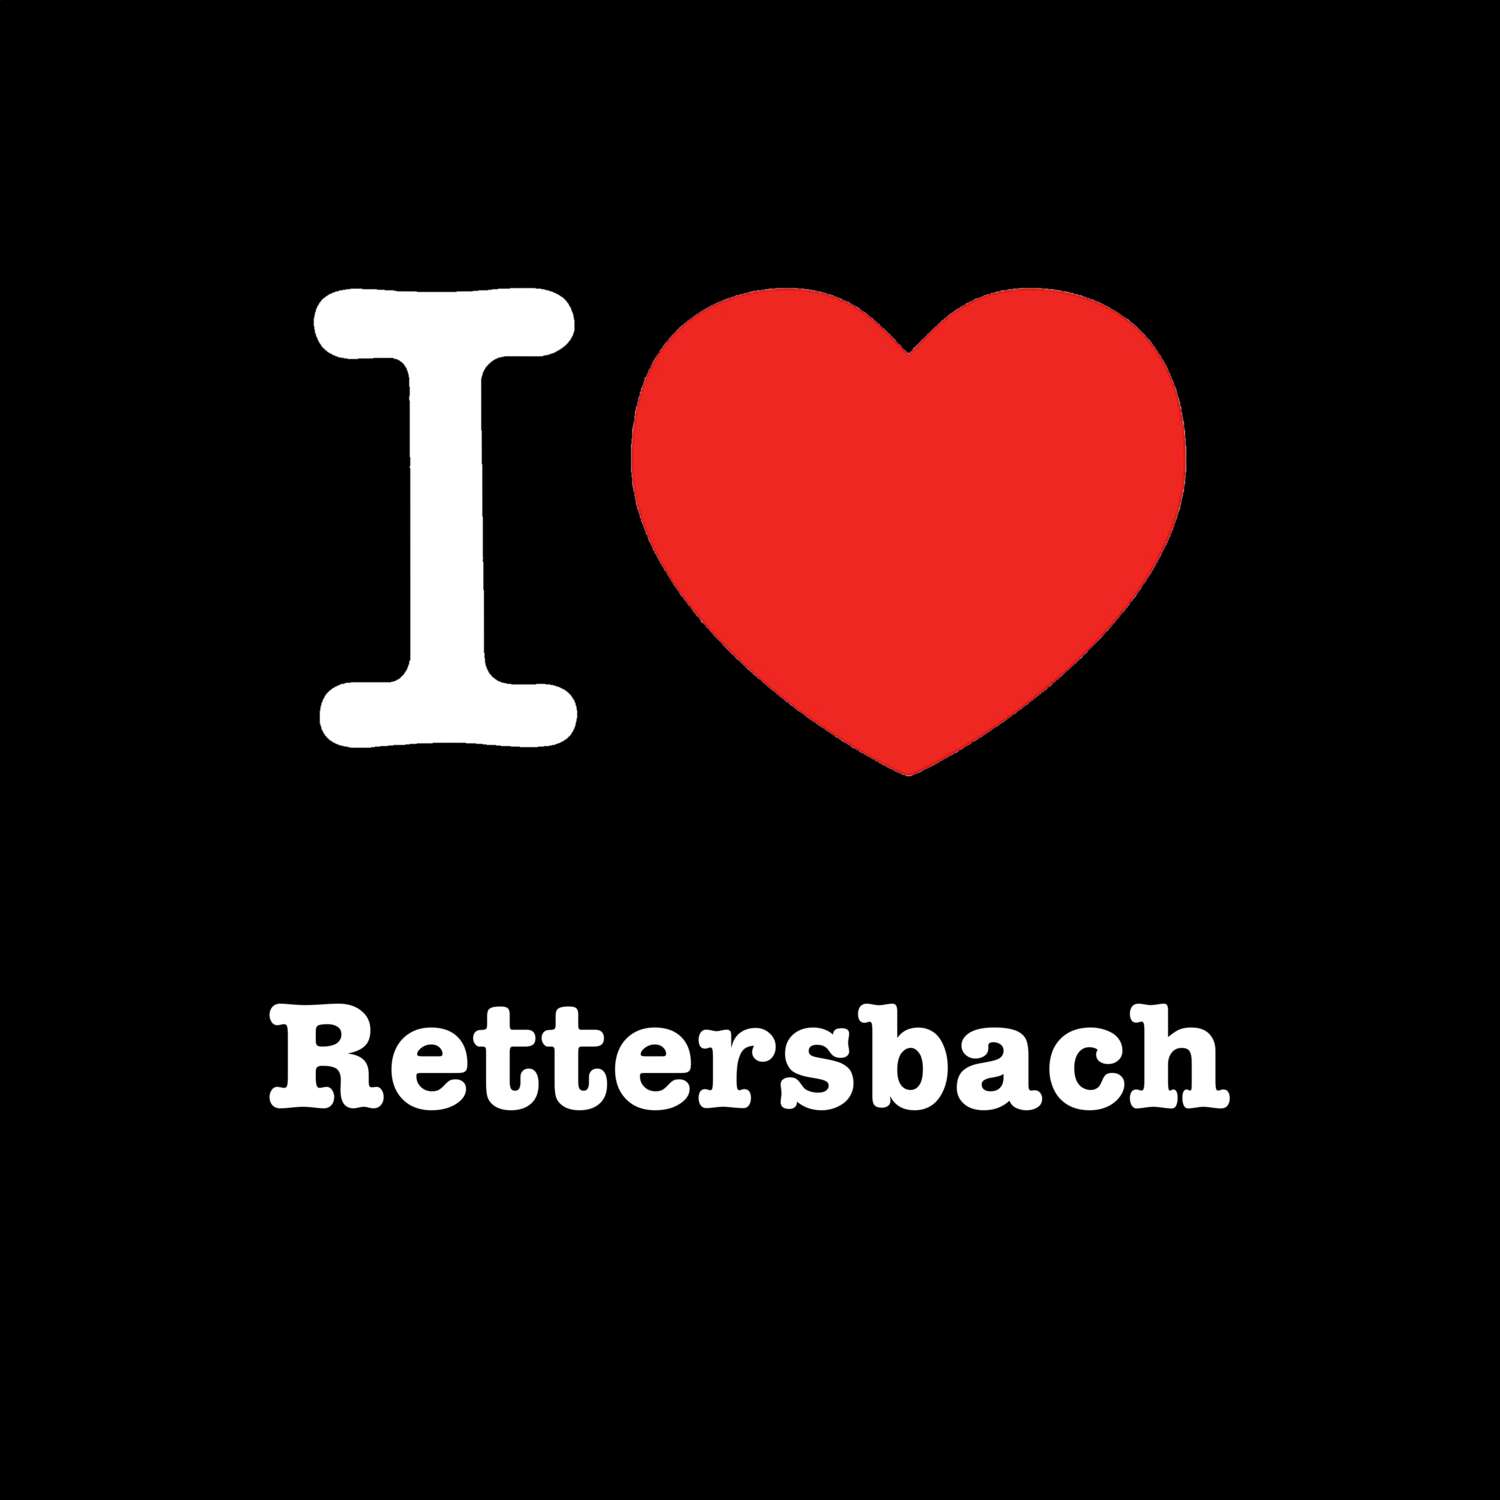 Rettersbach T-Shirt »I love«